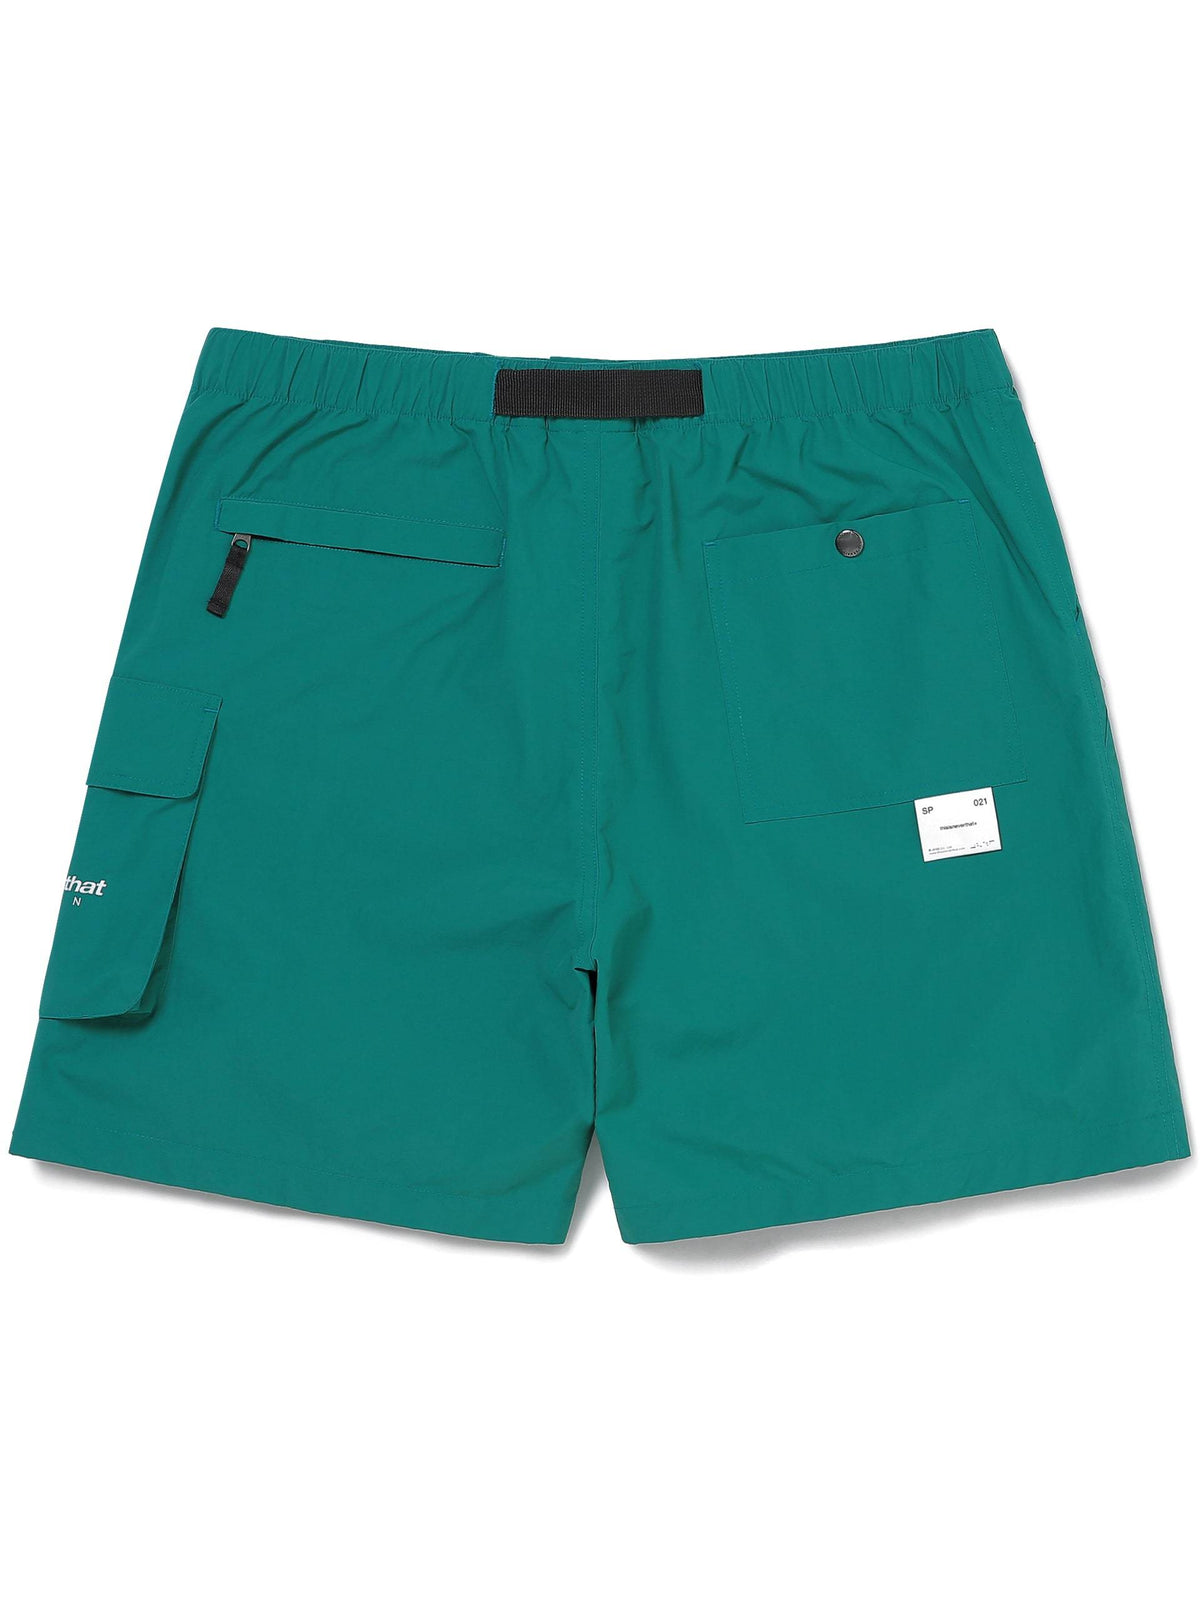 DSN SUPPLEX® Short Pants 